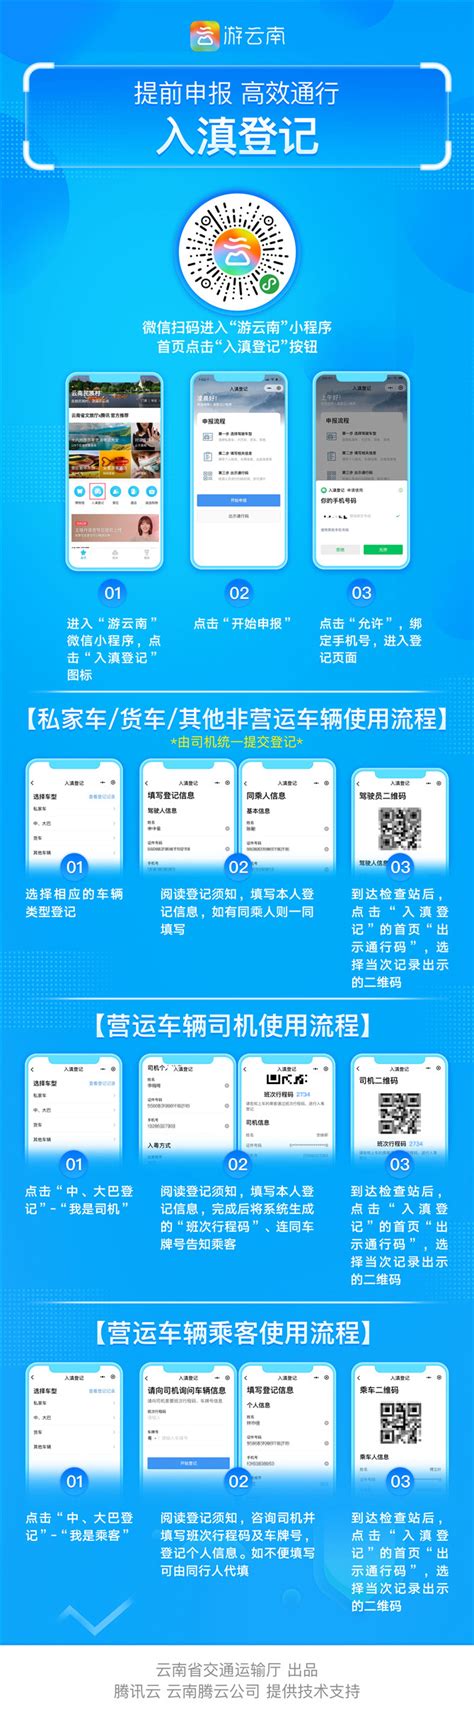 “一部手机游云南”推出车辆“入滇登记”服务功能 - 文化旅游 - 云桥网